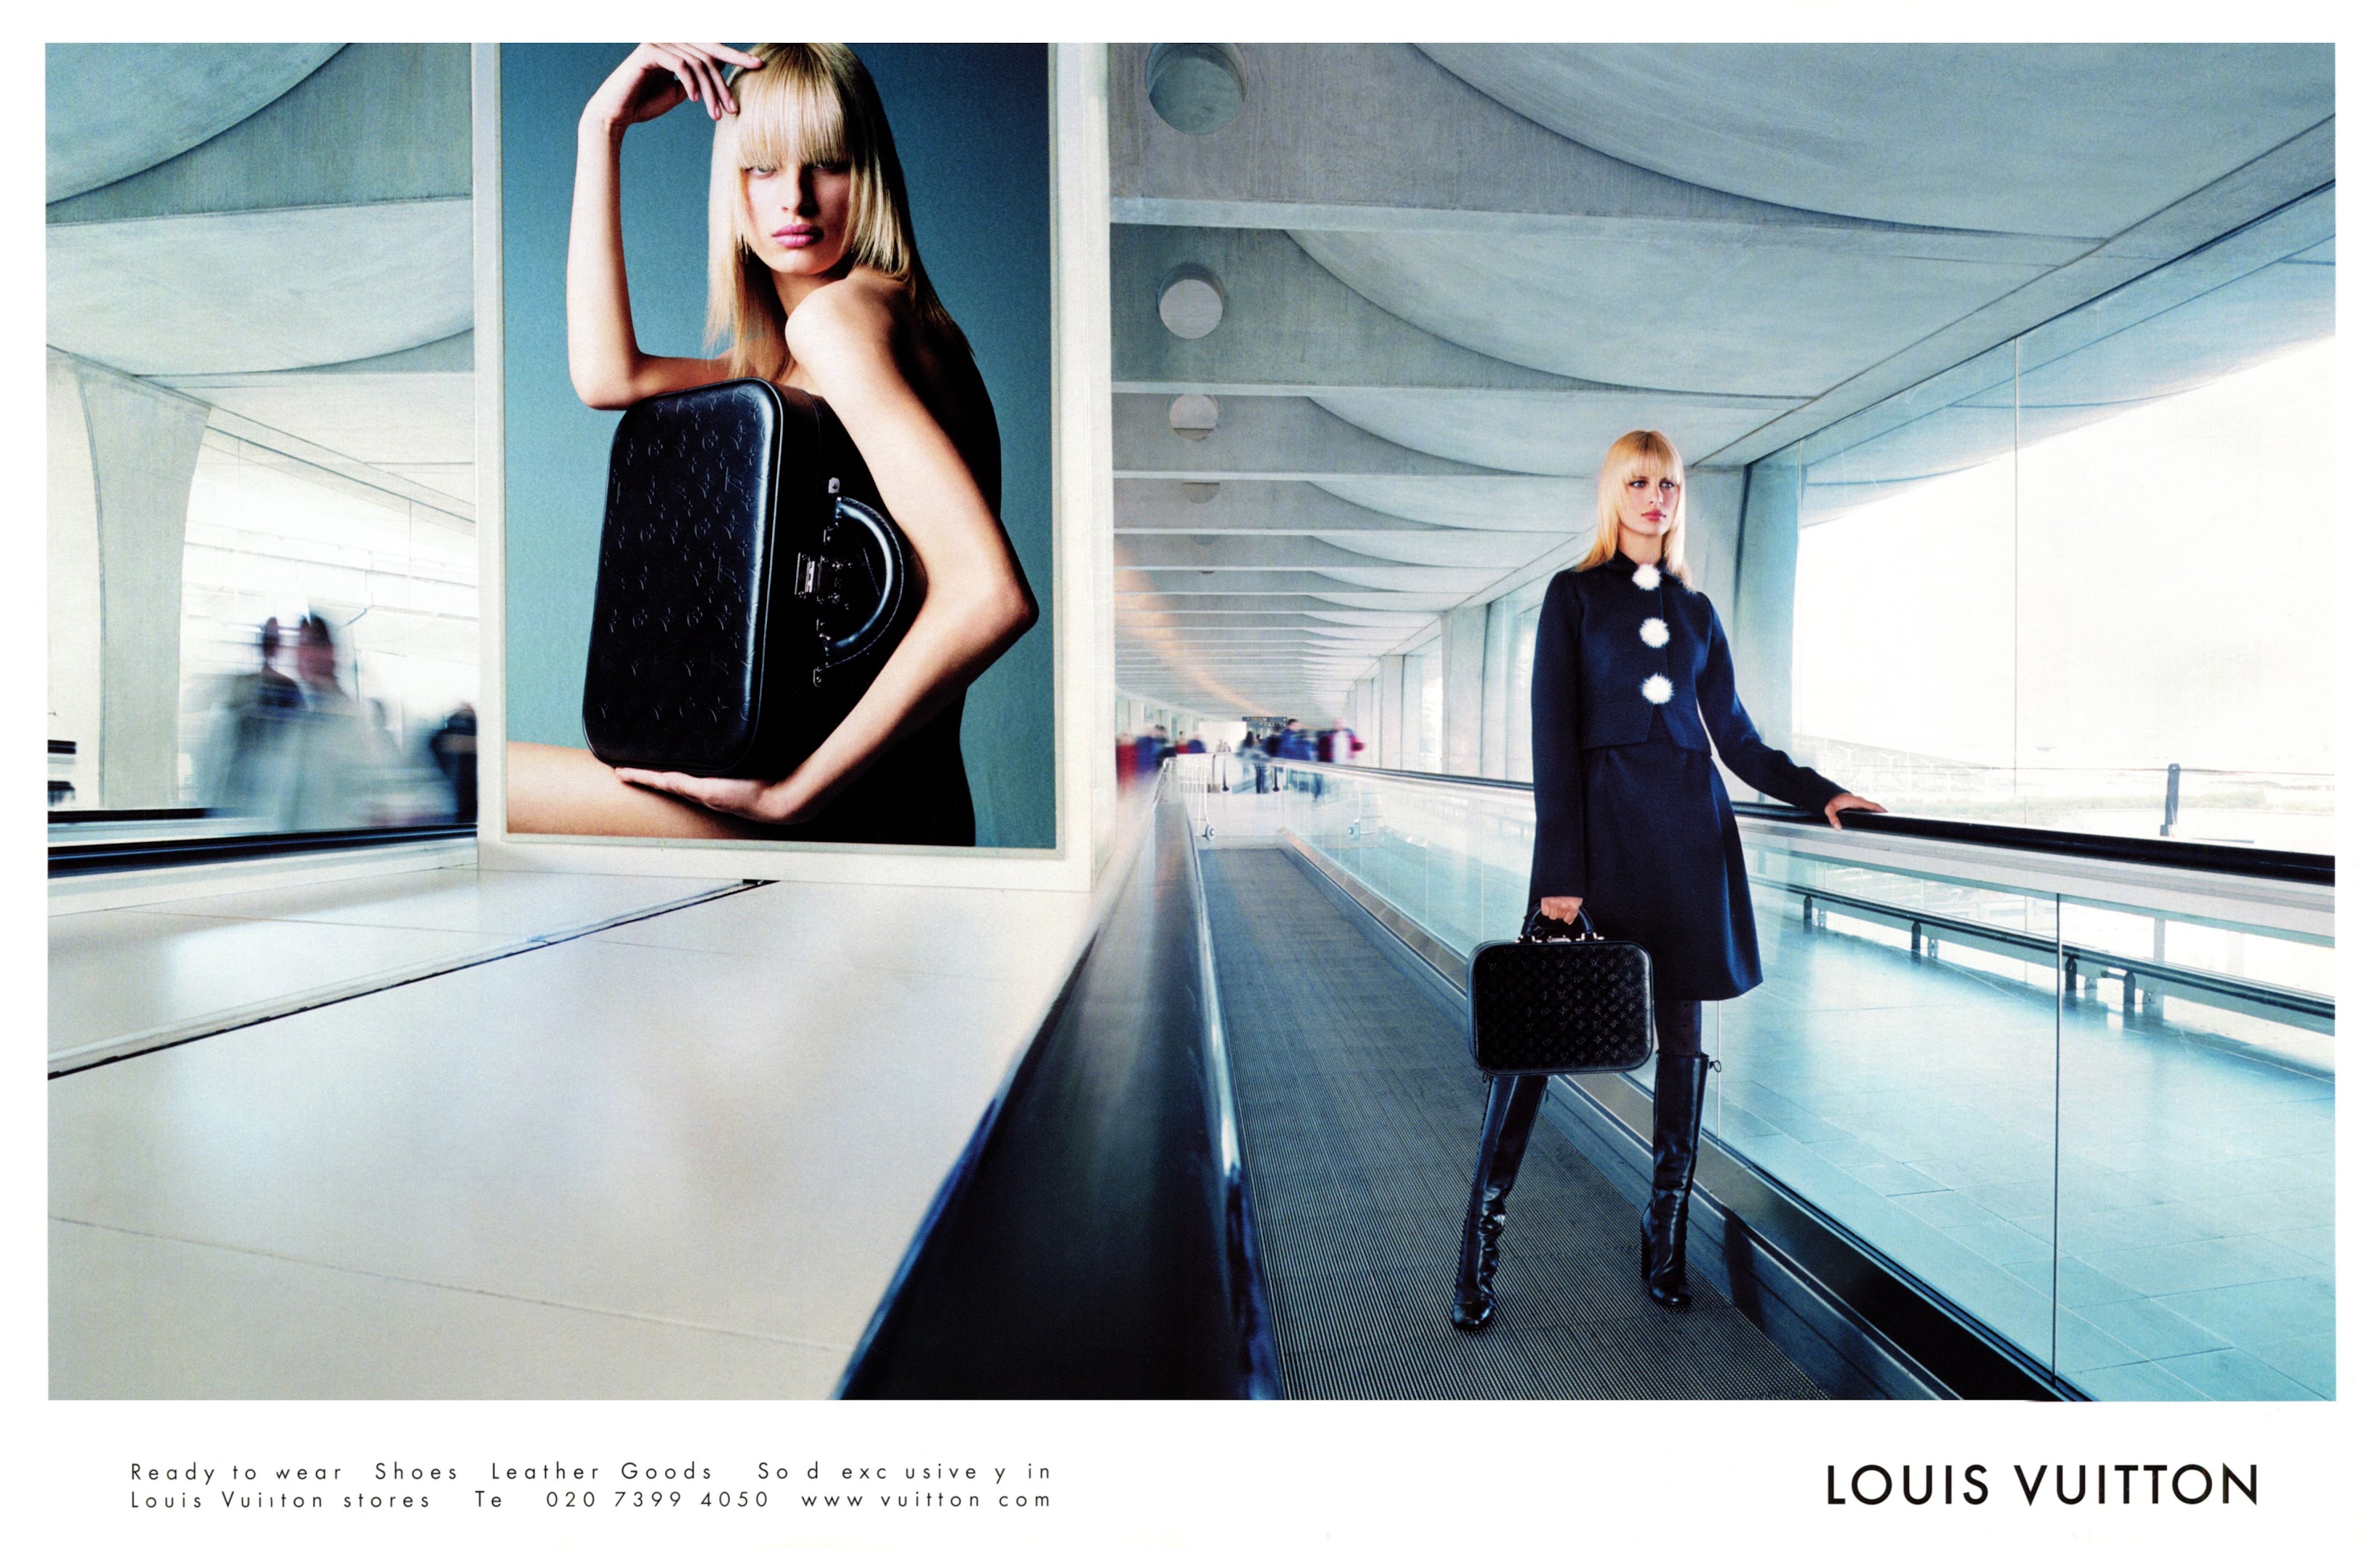 Patrick Demarchelier Shoots Louis Vuitton Campaign